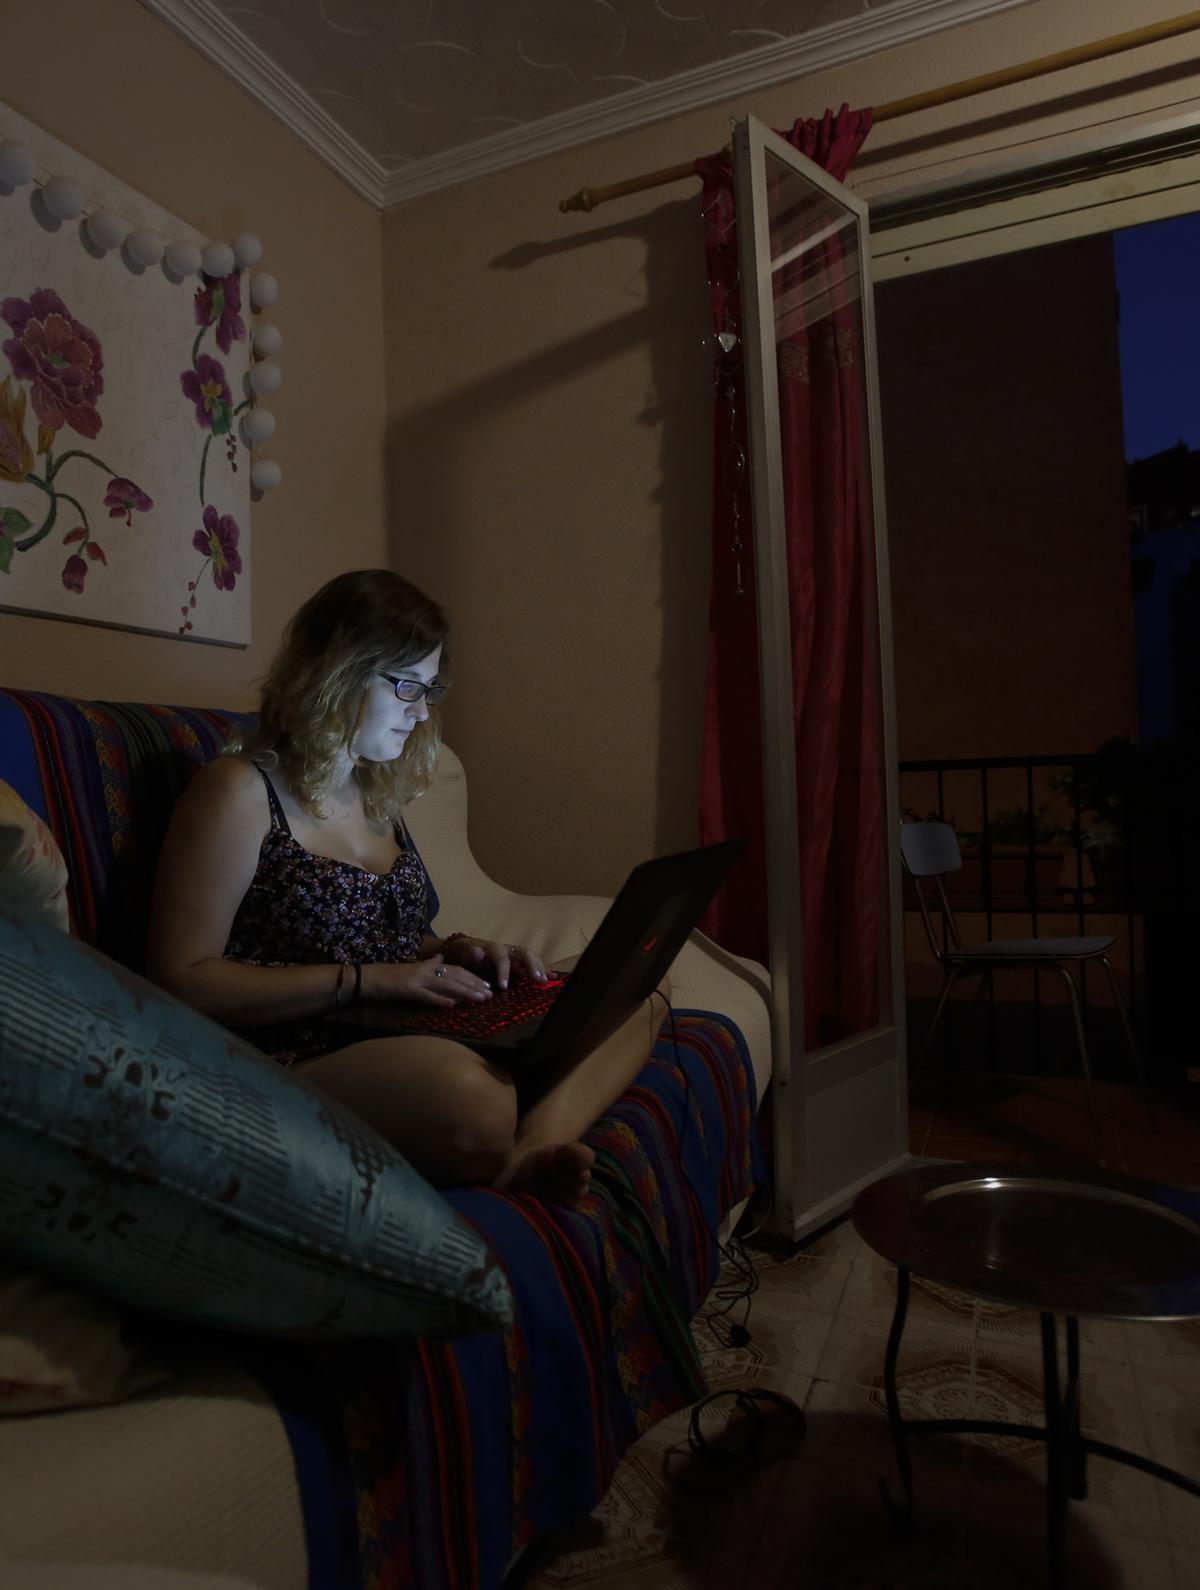 Una joven con su ordenador en el comedor de una casa.